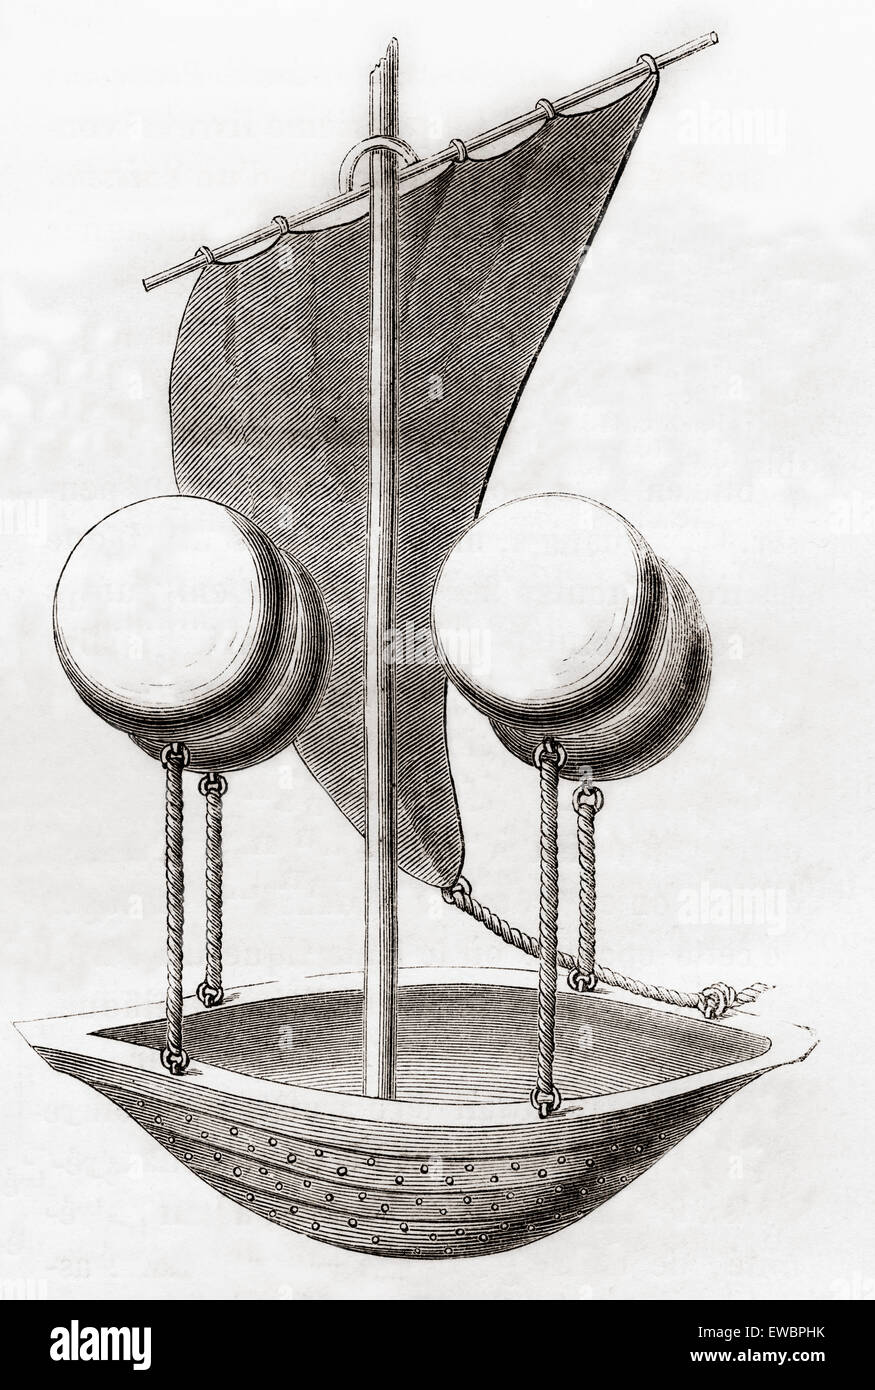 Francesco de Lana Terzi's Flying Boat concept c.1670. Francesco de Lana Terzi, 1631 - 1687. Jésuite italien, mathématicien et naturaliste, pionnier de l'aéronautique. Banque D'Images